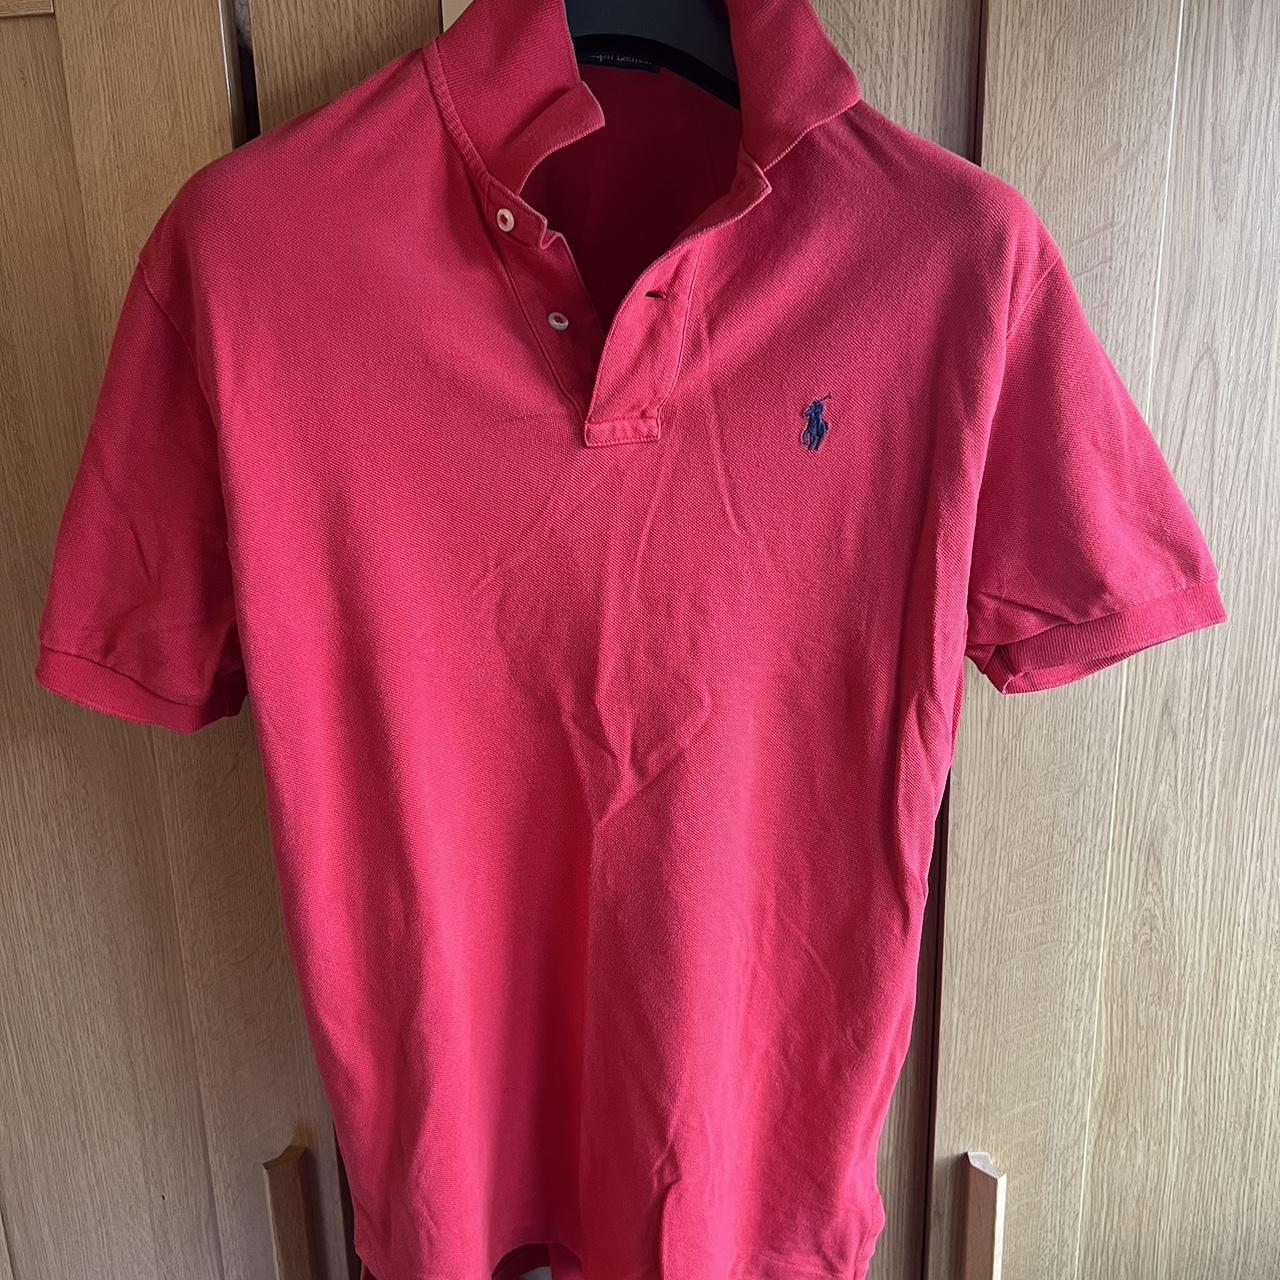 Red Ralph Lauren Polo Shirt Size S Men’s but fits M... - Depop